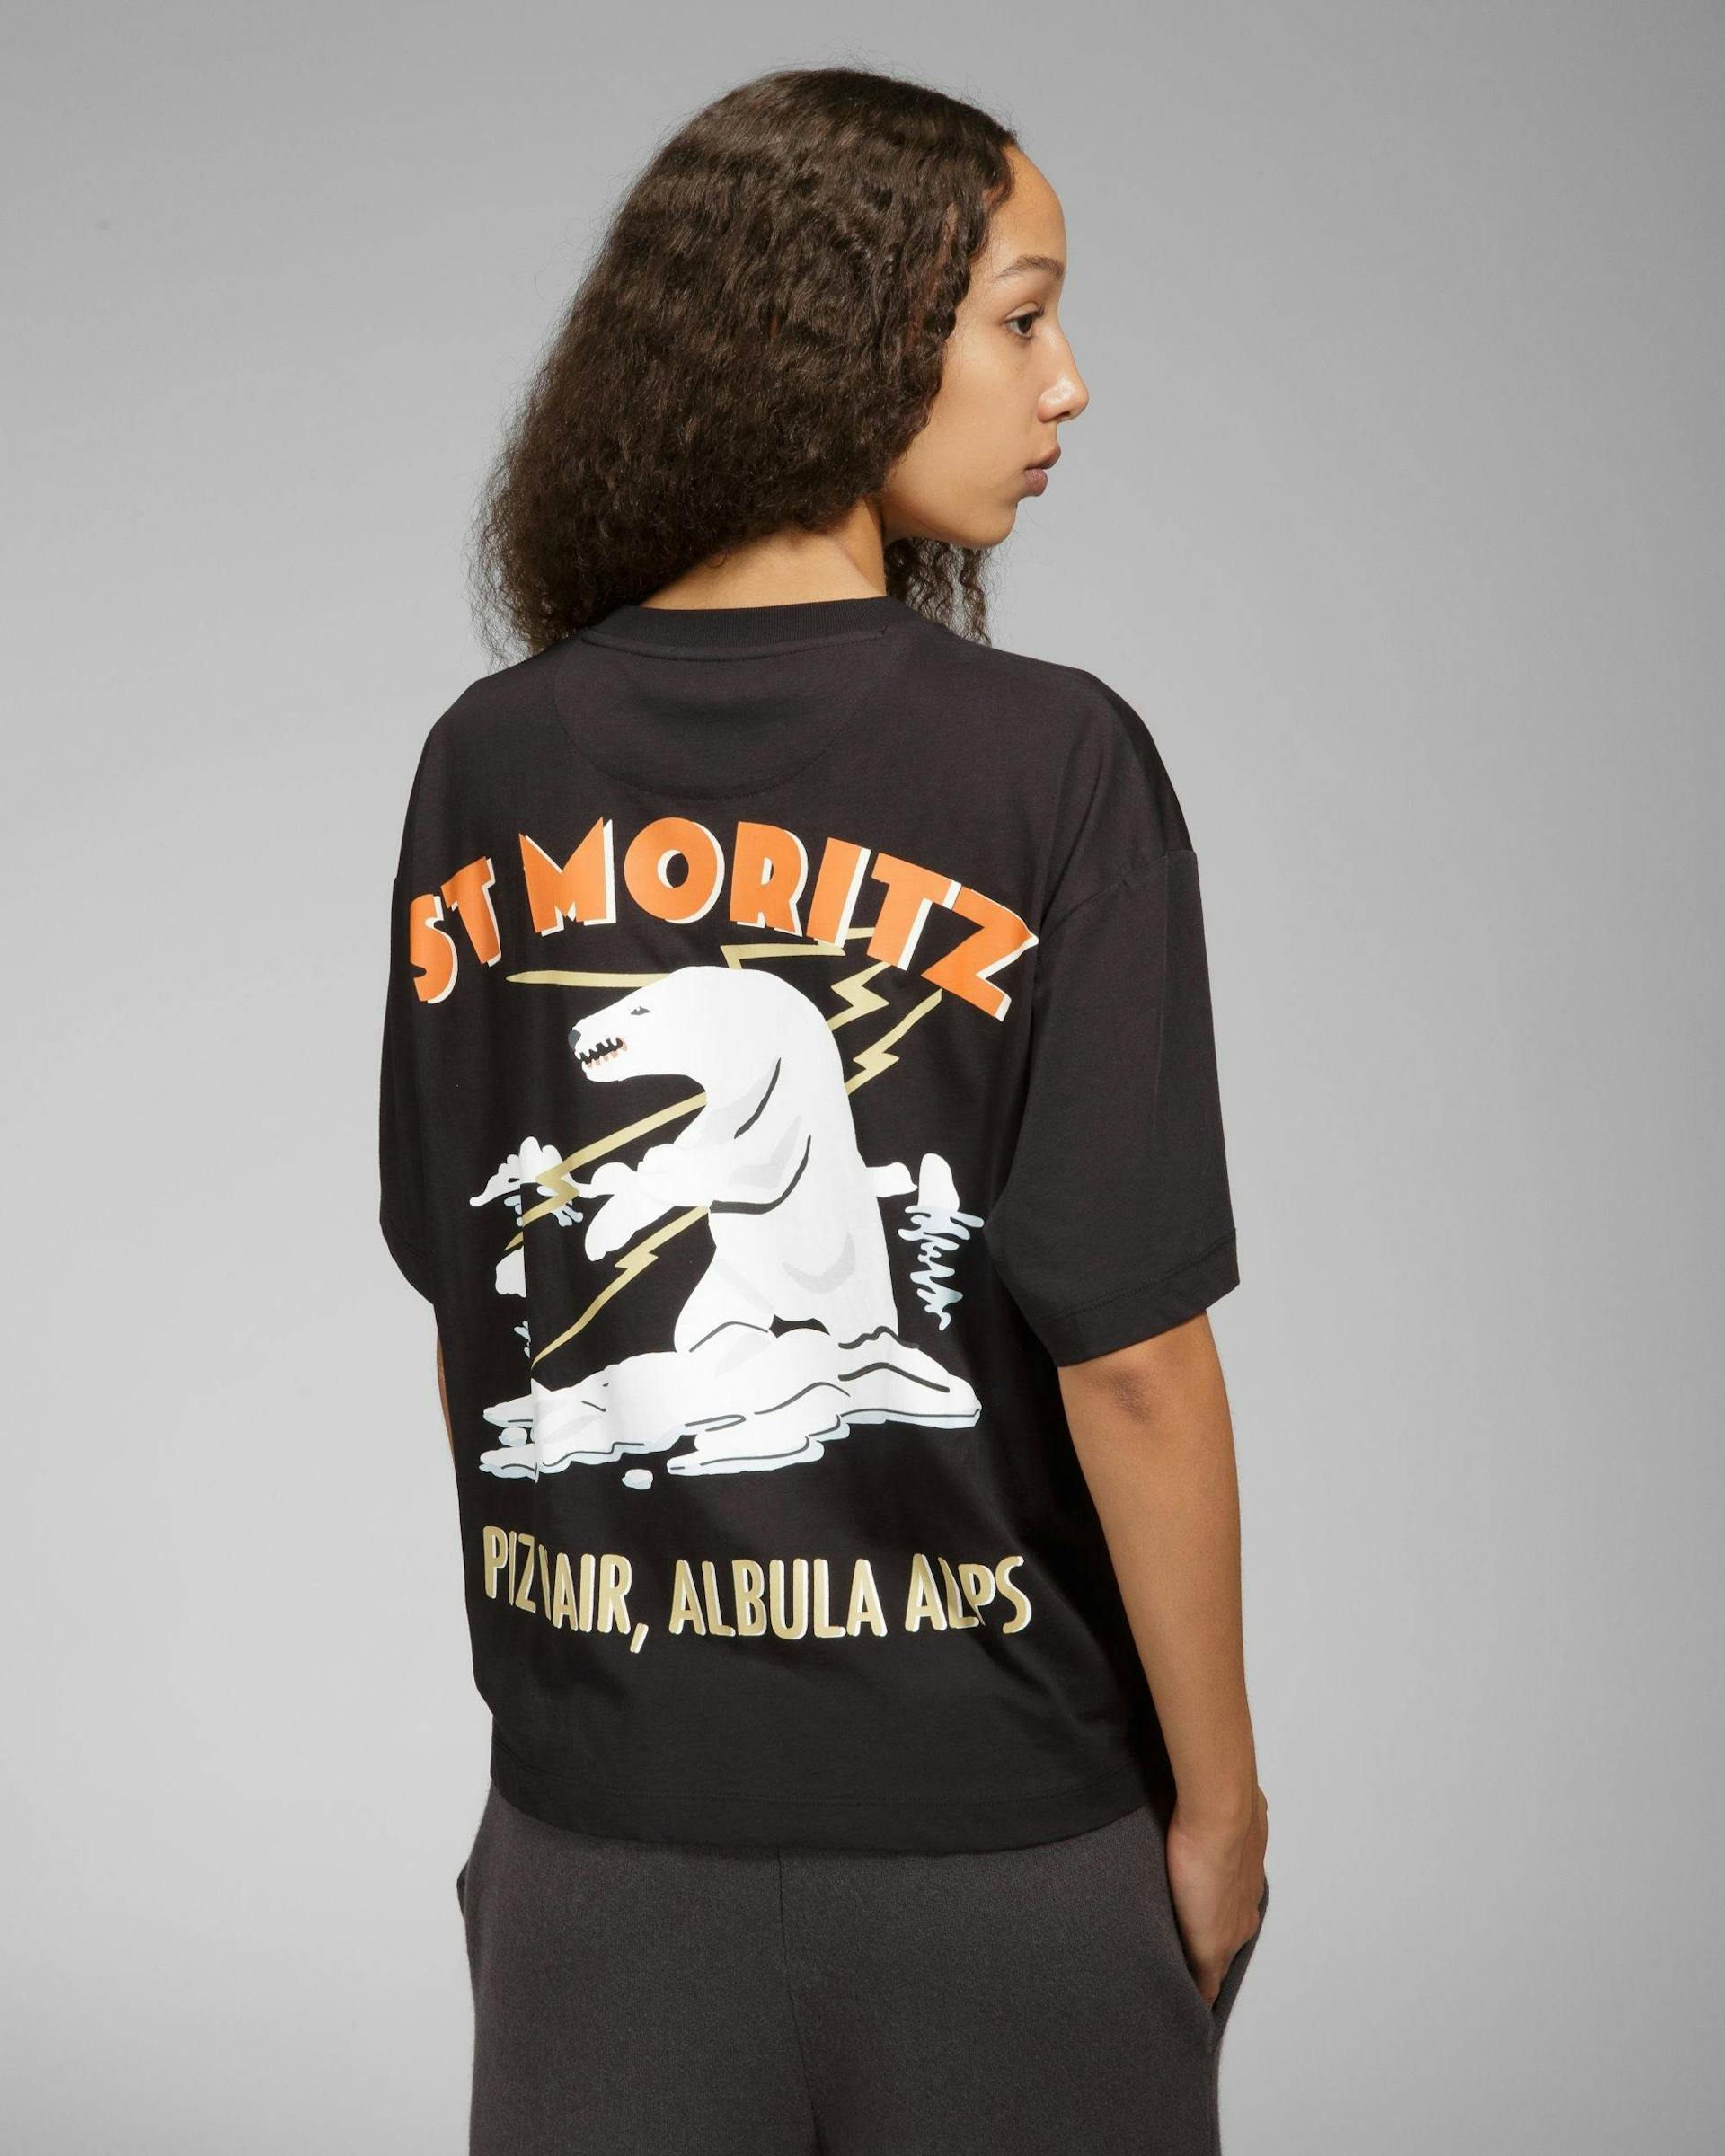 St Moritz Cotton T-Shirt In Black - Men's - Bally - 01